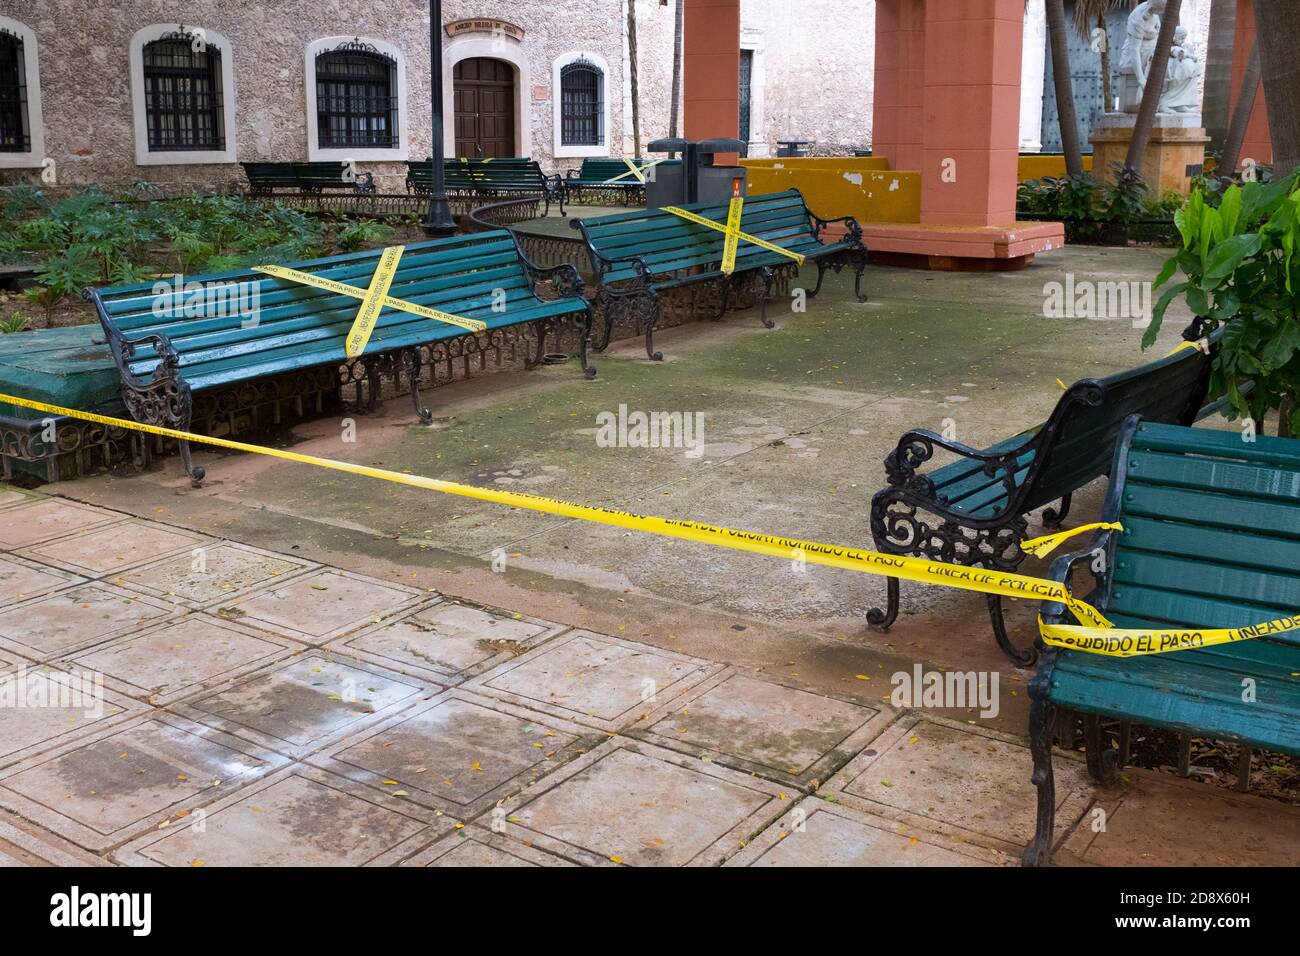 Panchine cordonato a causa del Covid-19 Pandemic, Merida, Messico Foto Stock